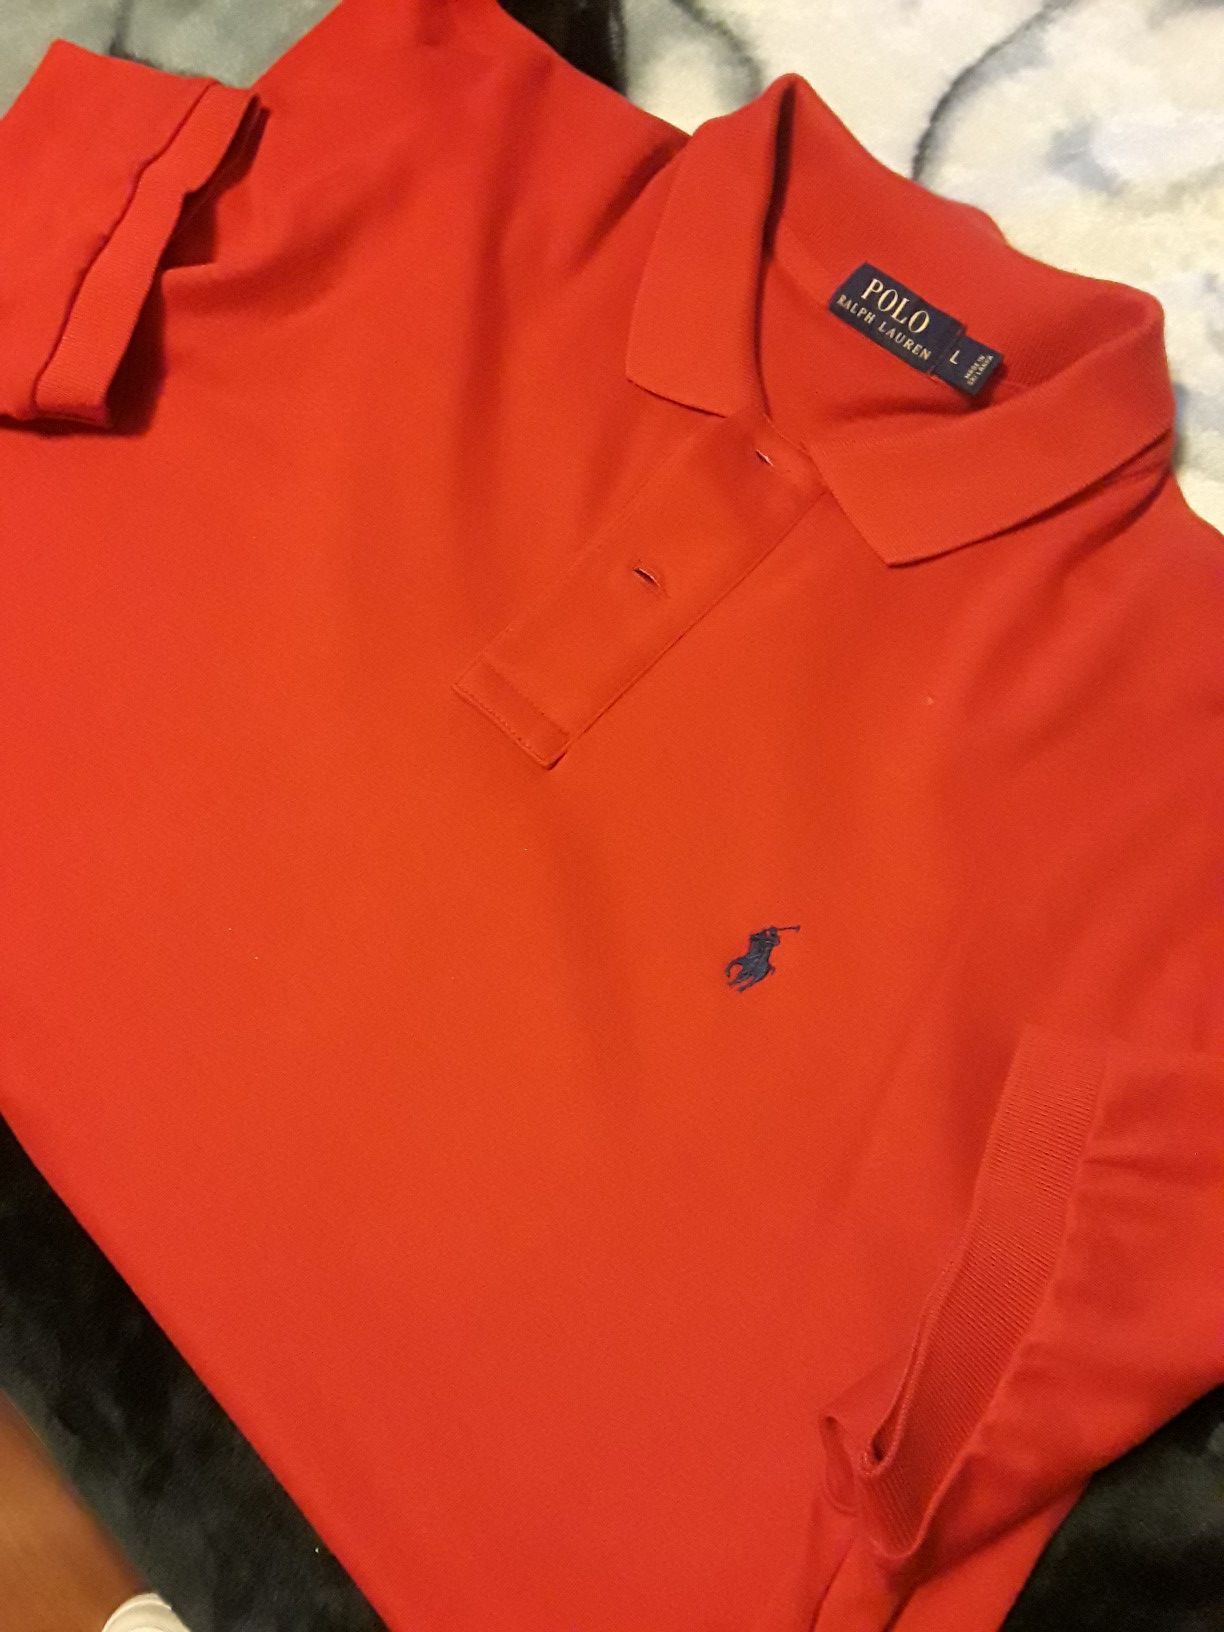 Ralph Lauren polo shirt $15